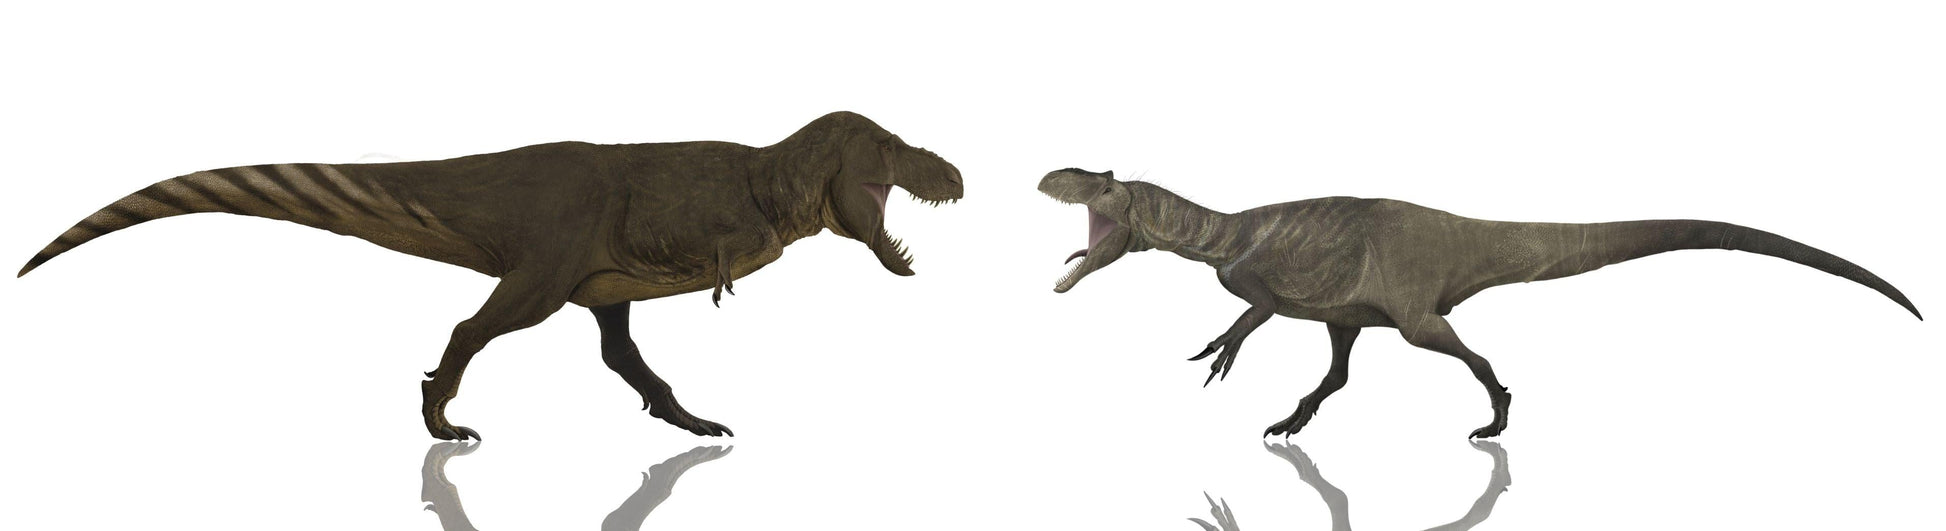 The Raptor Crate! Velociraptor, Deinonychus, Dromaeosaurus – Fossil Crates